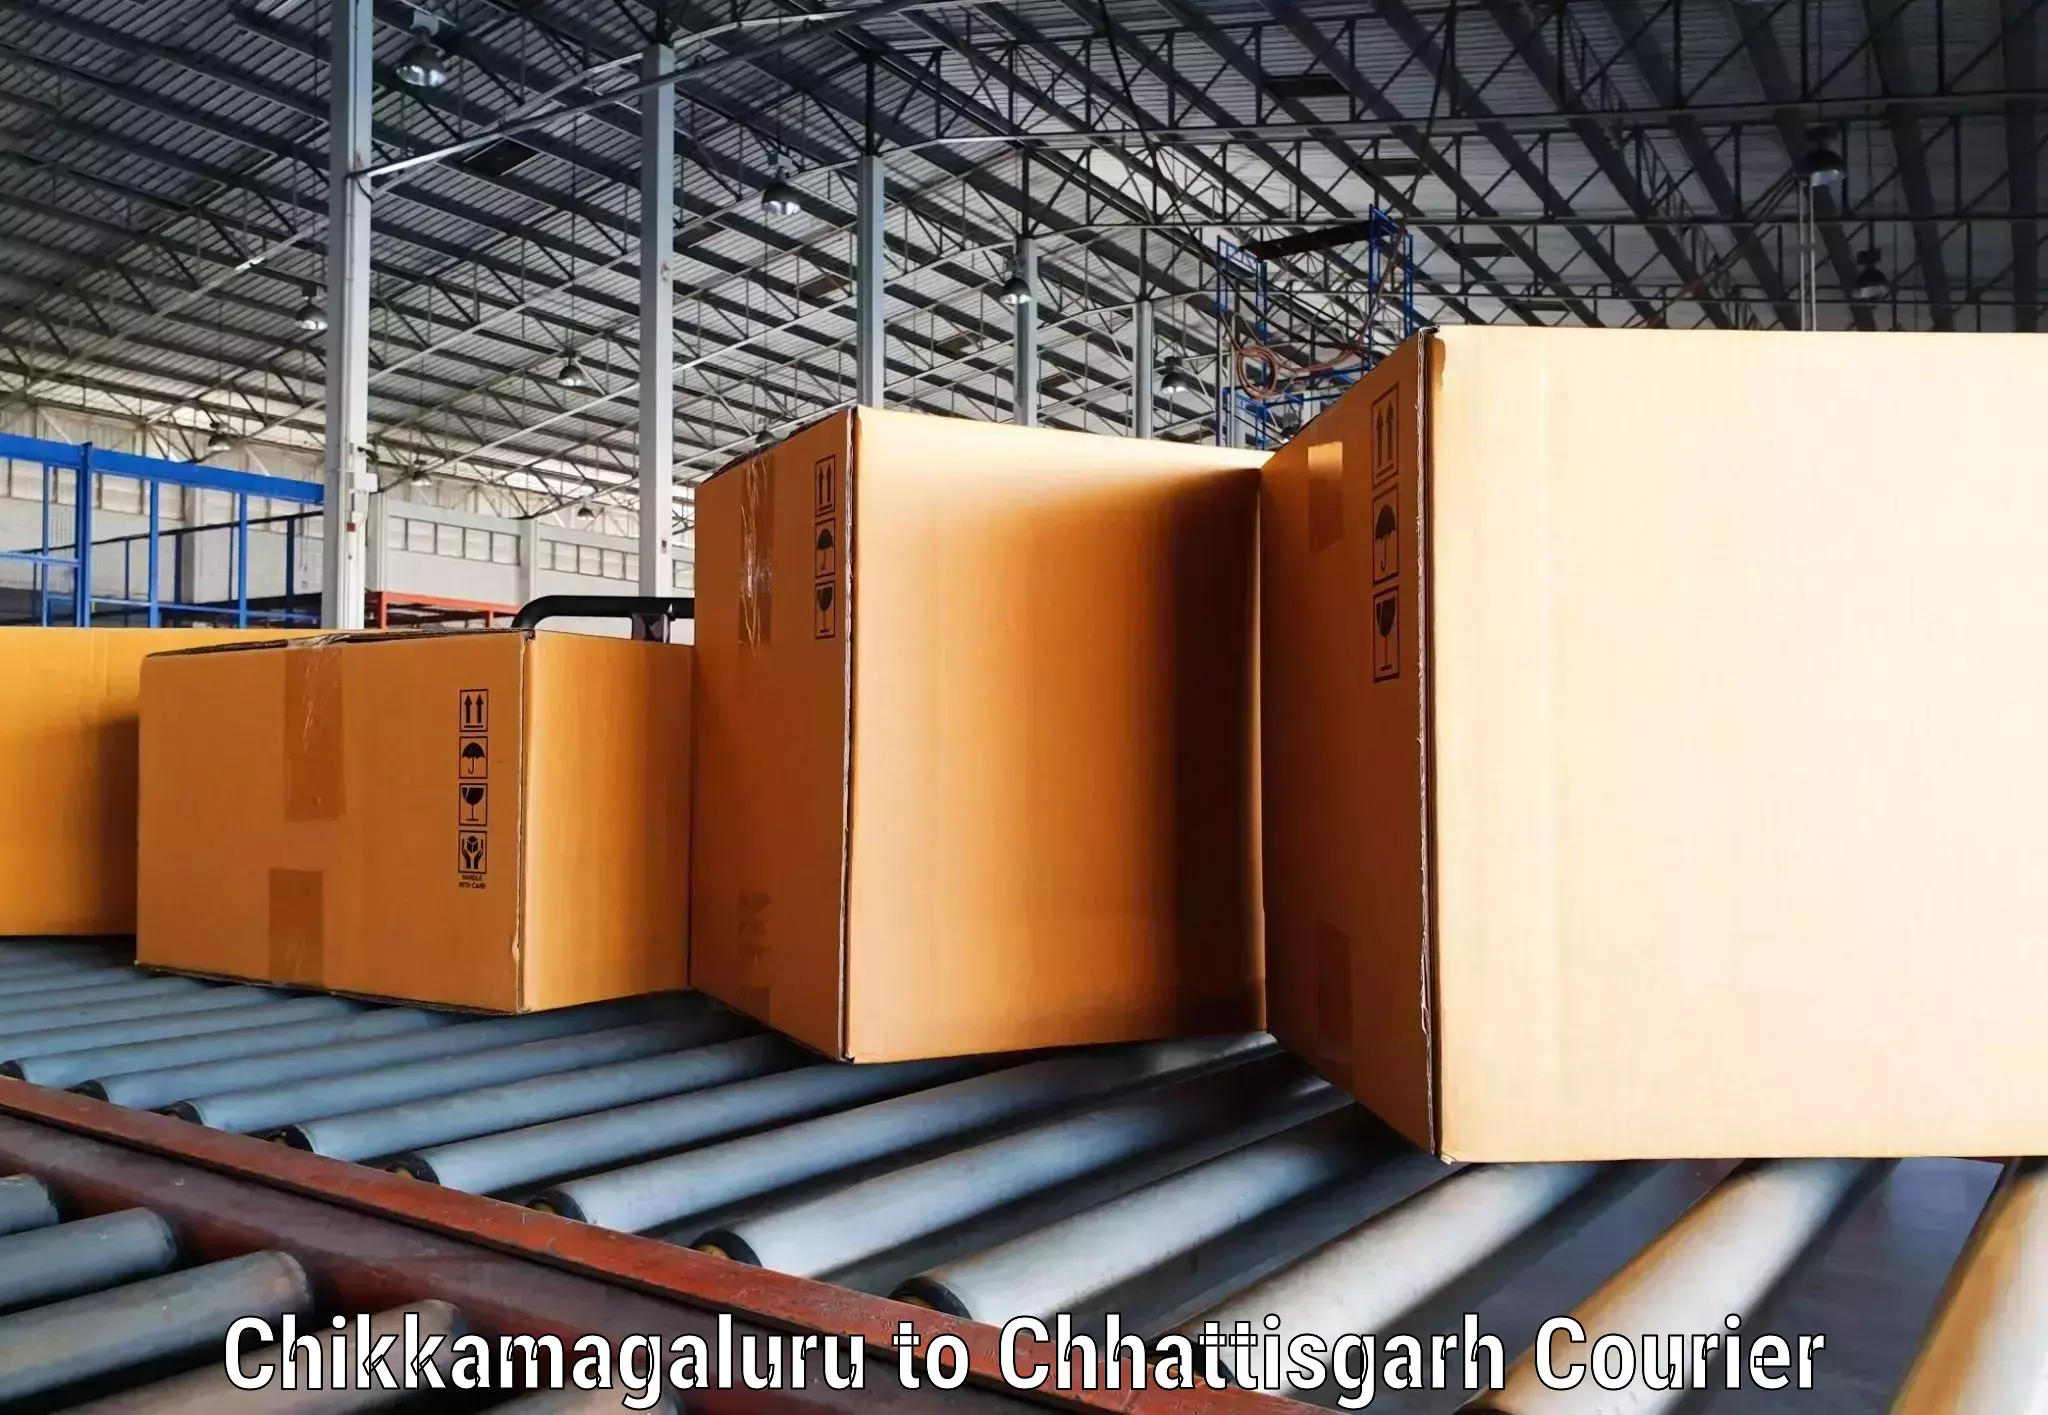 High-capacity parcel service Chikkamagaluru to NIT Raipur